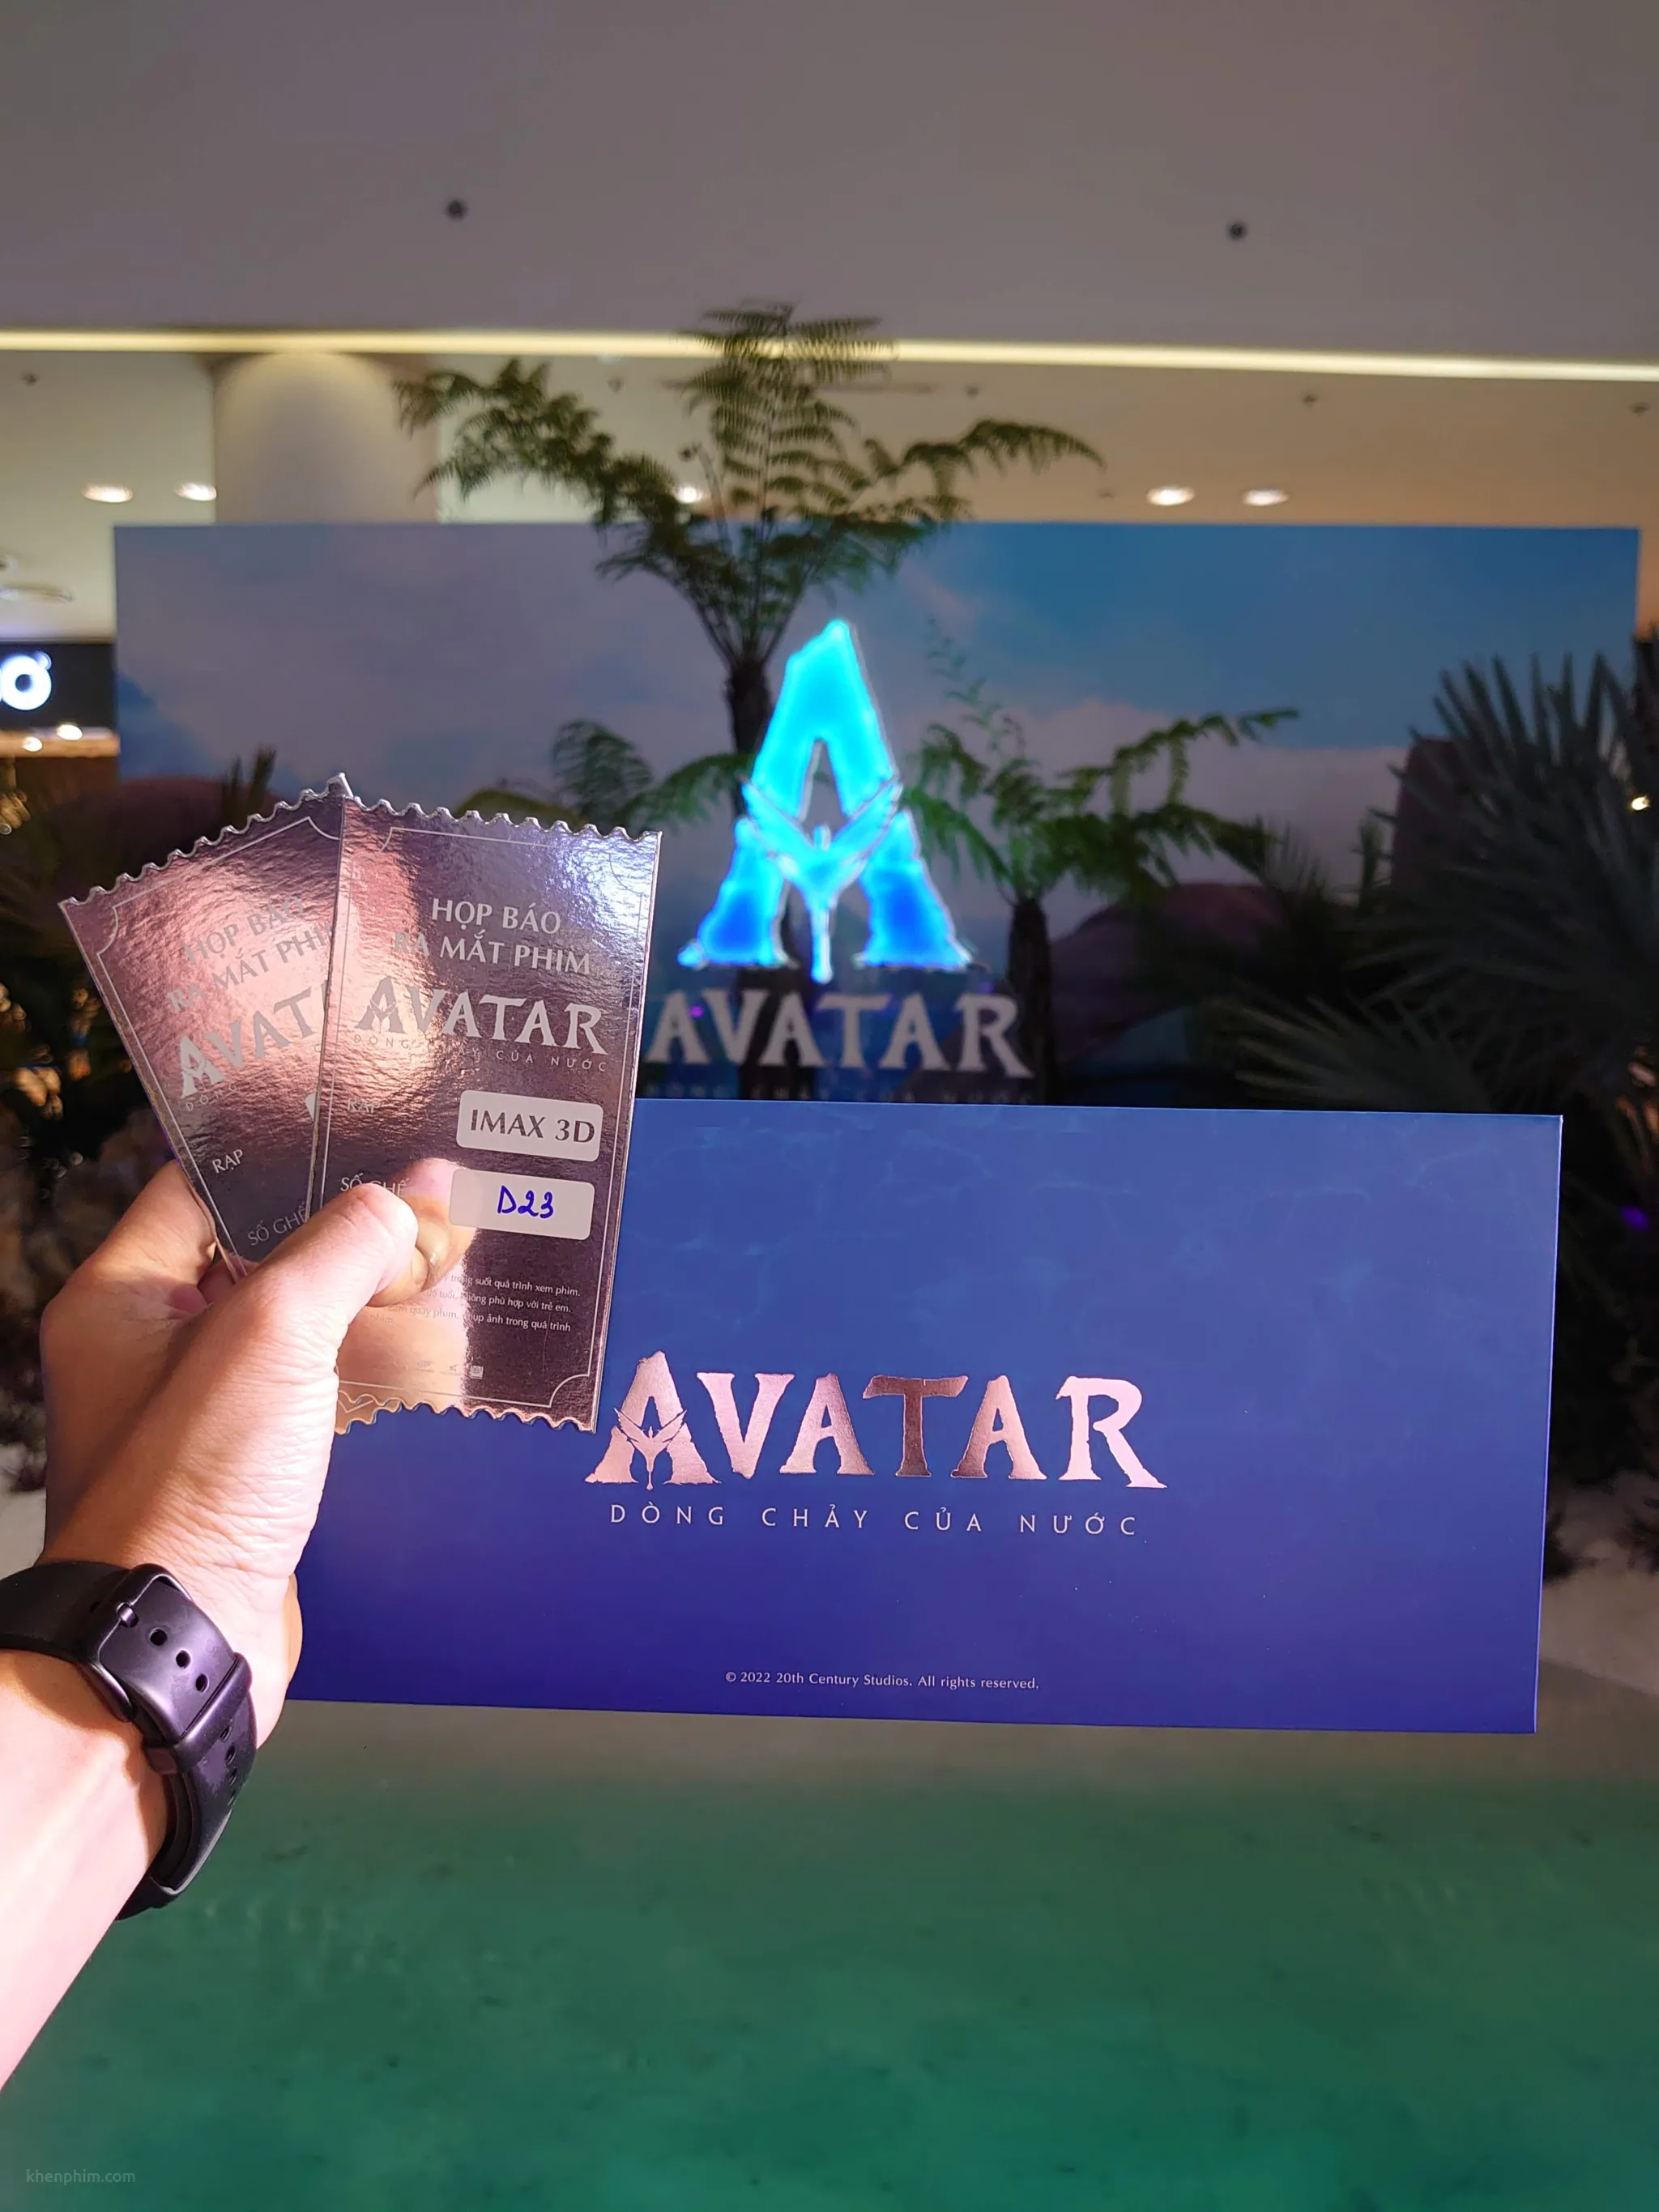 Các rạp chiếu phim nổi bật hiện có phim Avatar